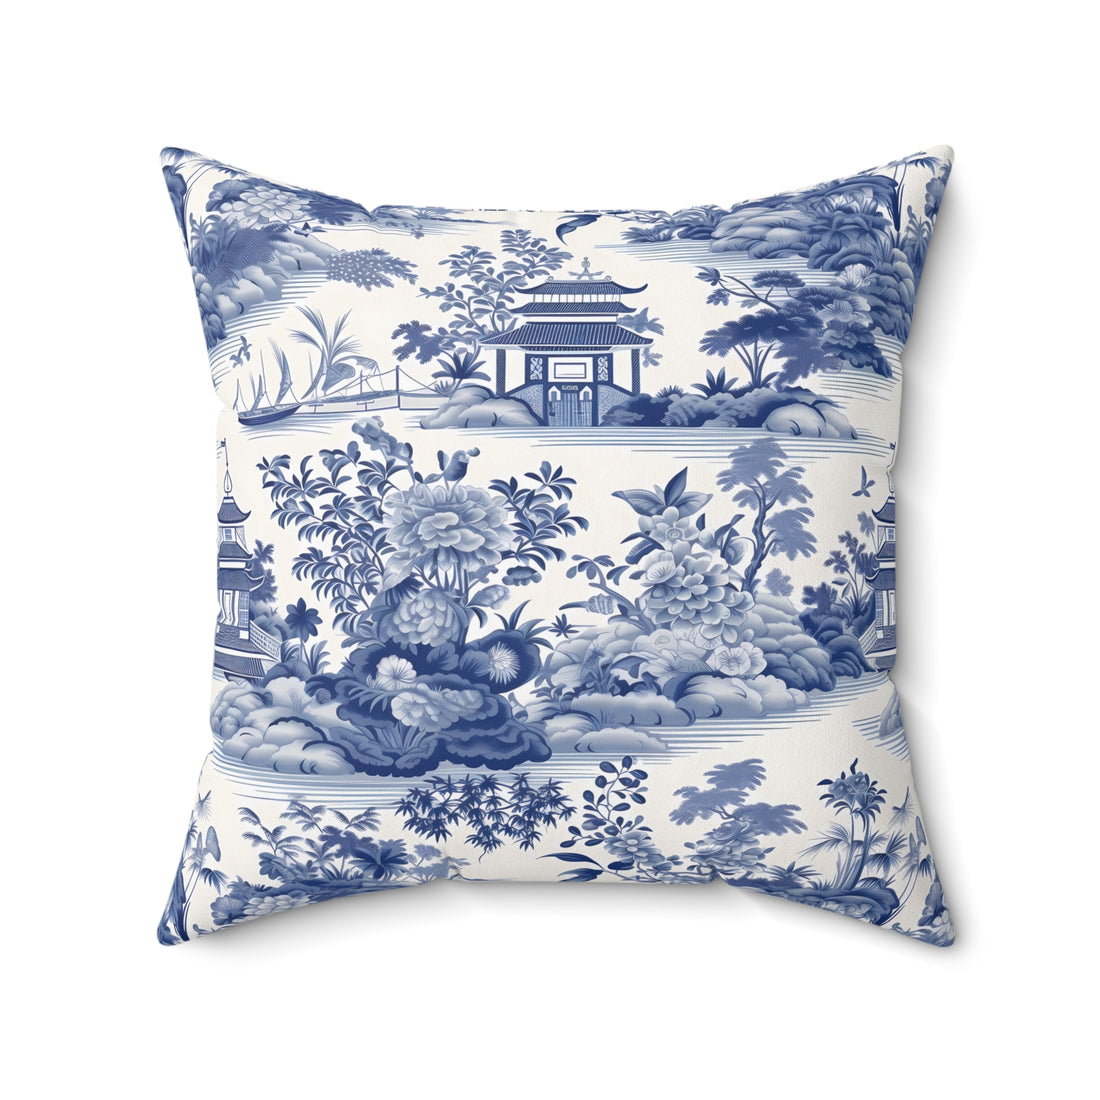 Oriental Dreams Spun Polyester Square Pillow